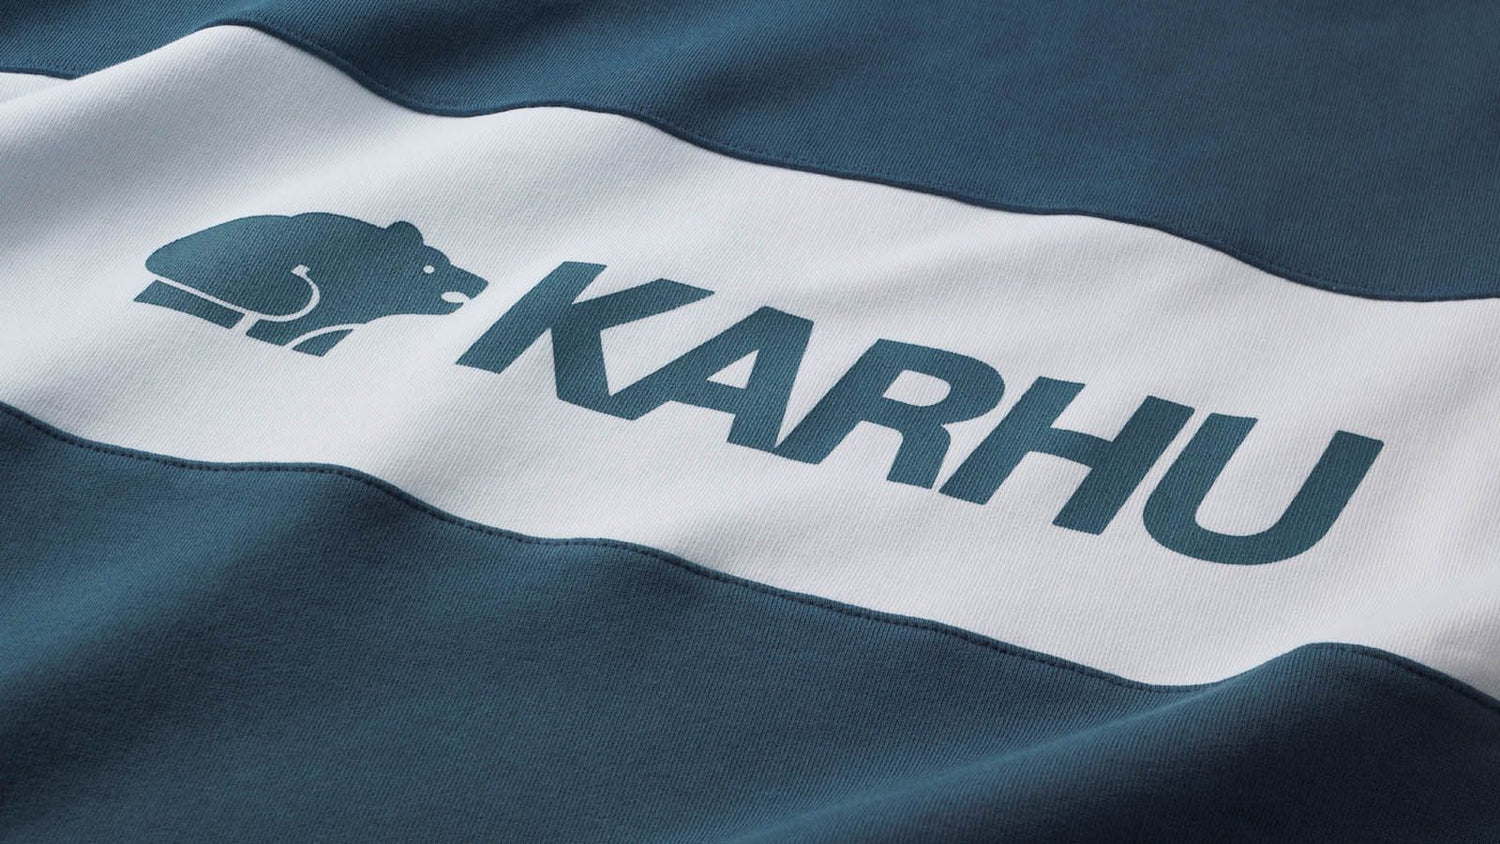 karhu blocked logo sweatshirt blue wing teal / white